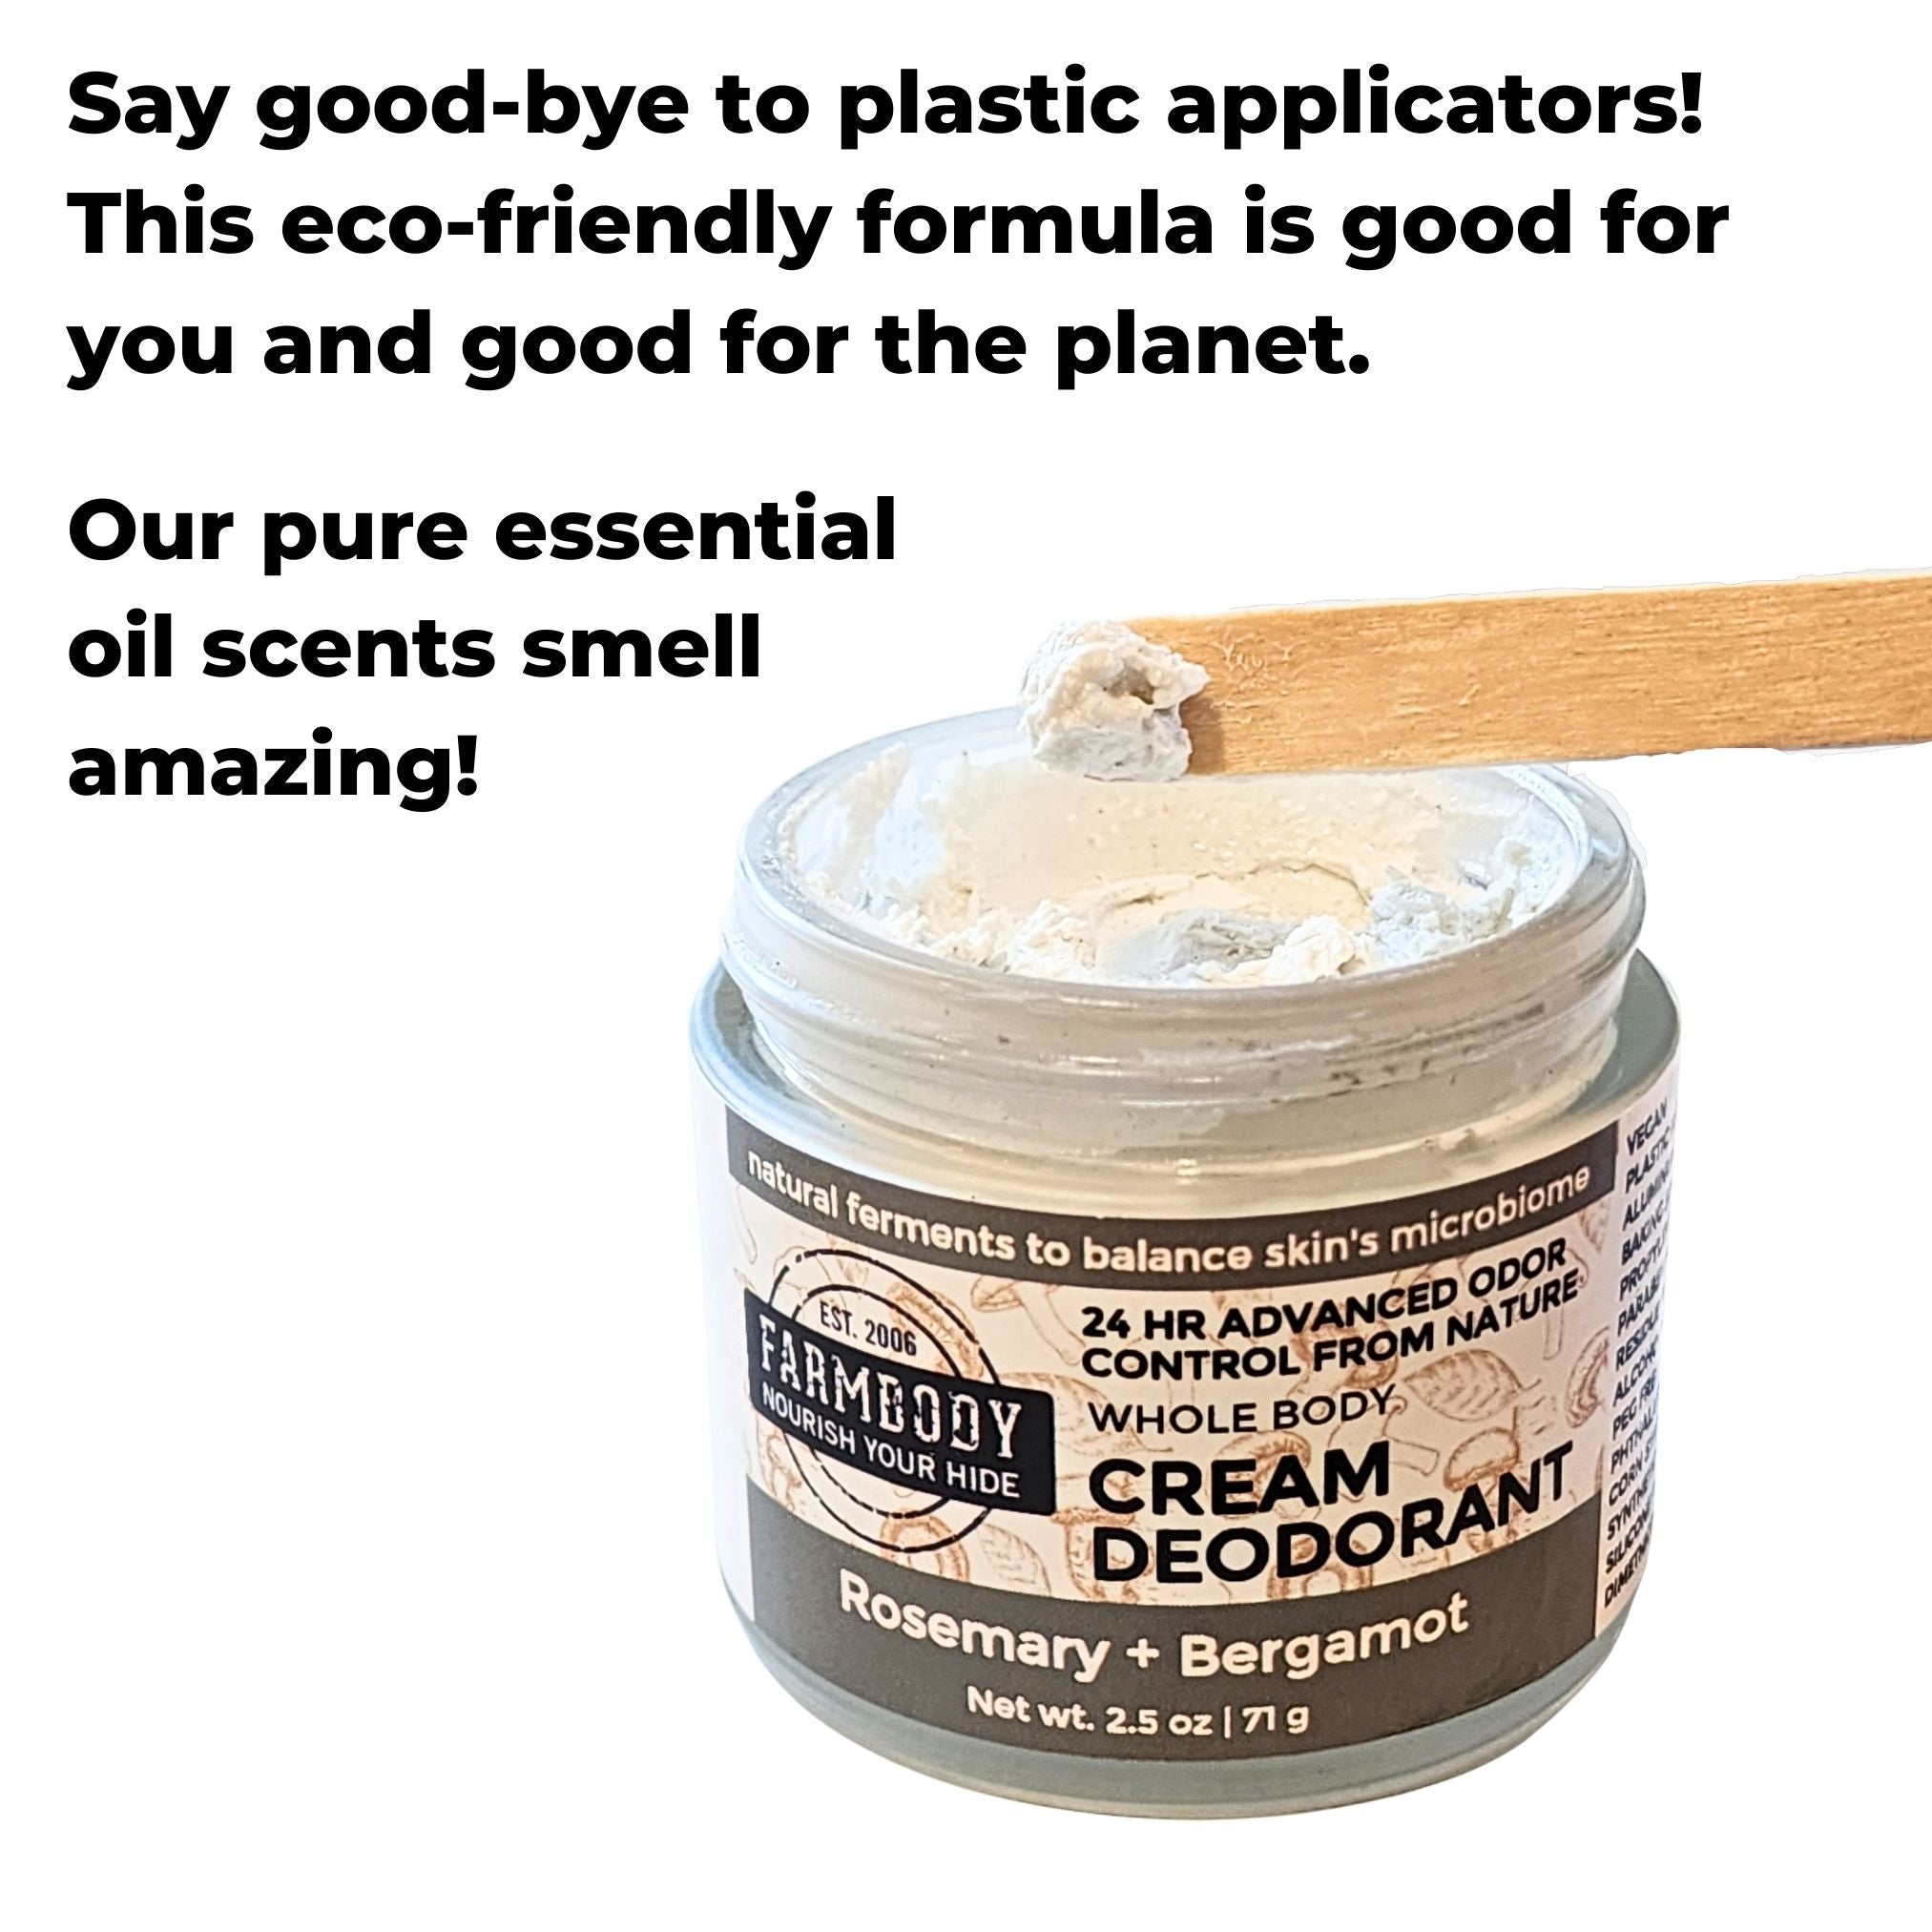 Farmbody Cream Deodorant comes in essential oil scents. No artificial fragrance